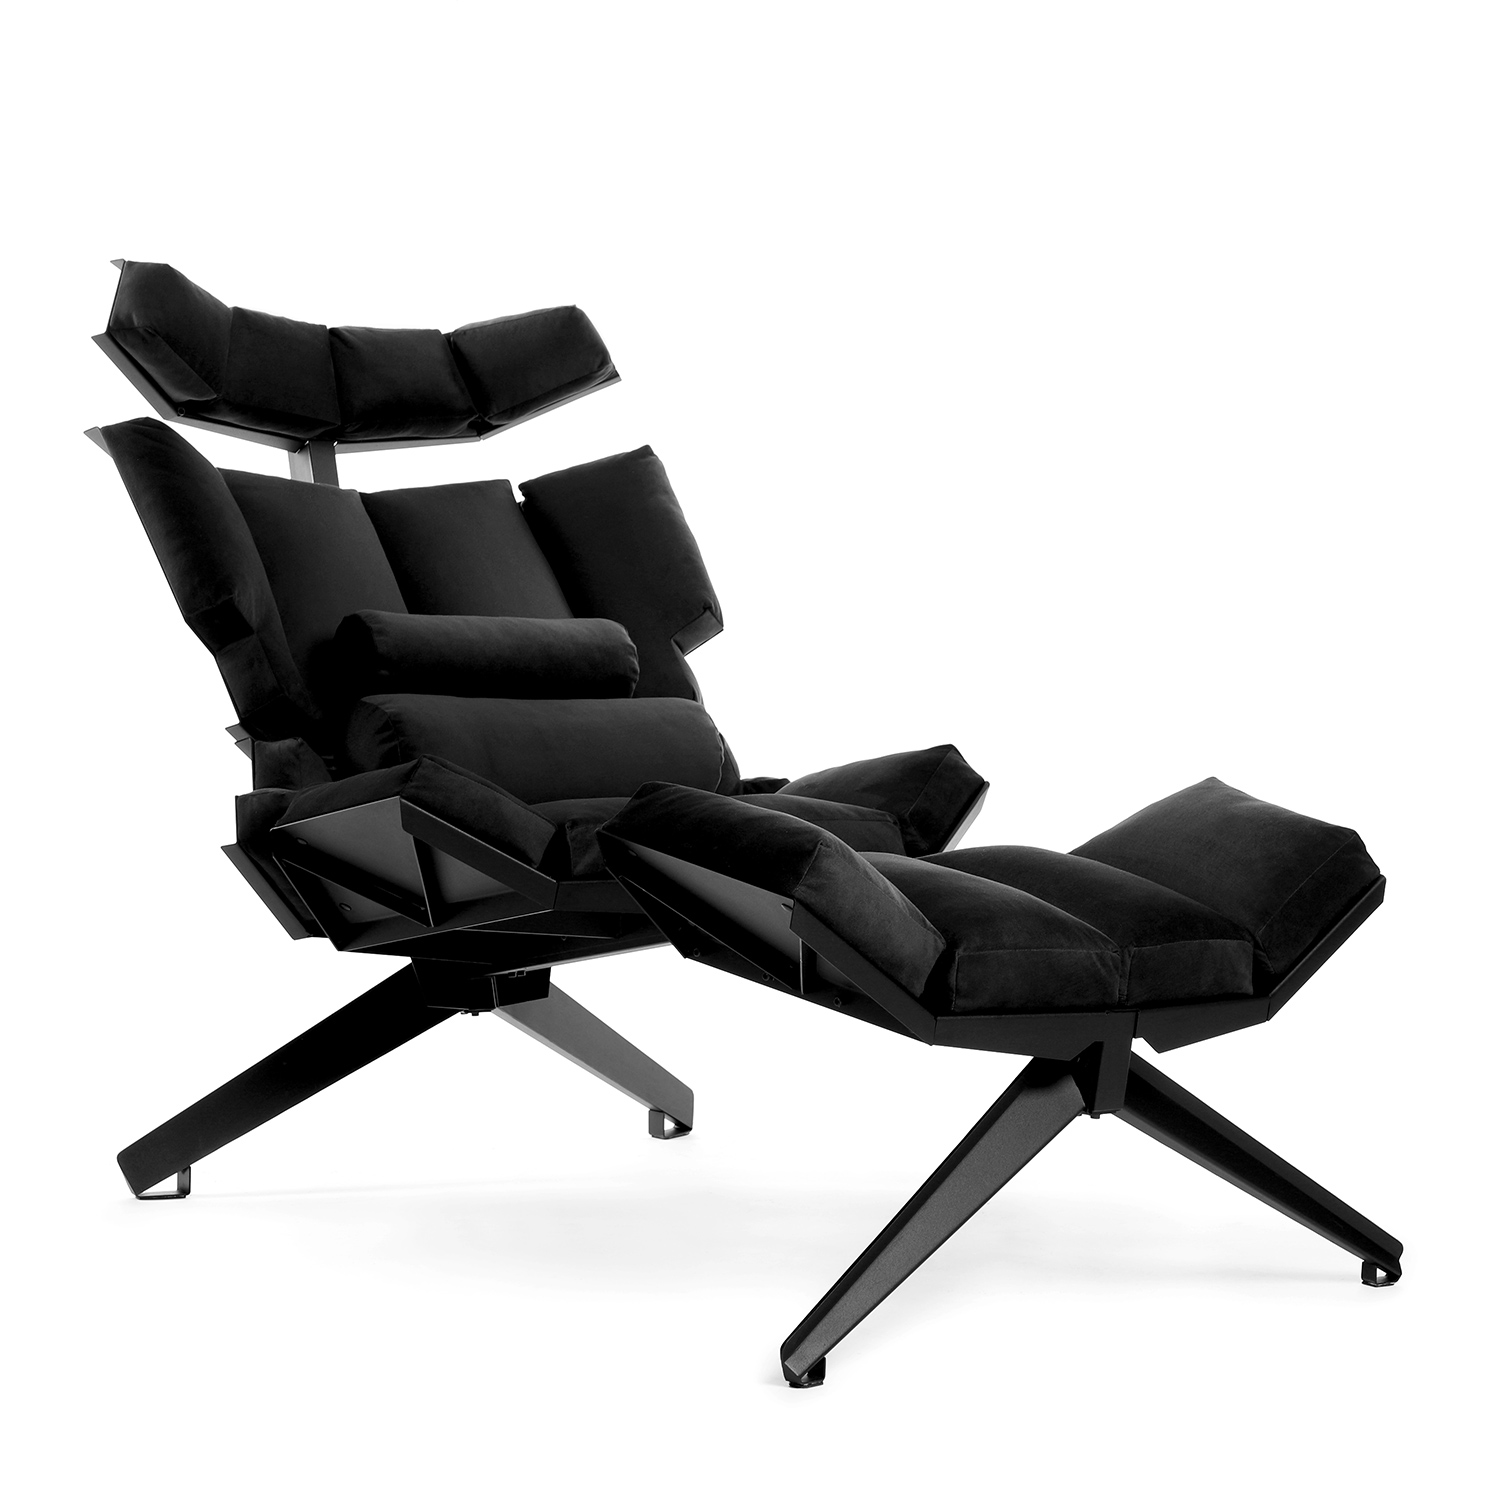 X1 lounge chair